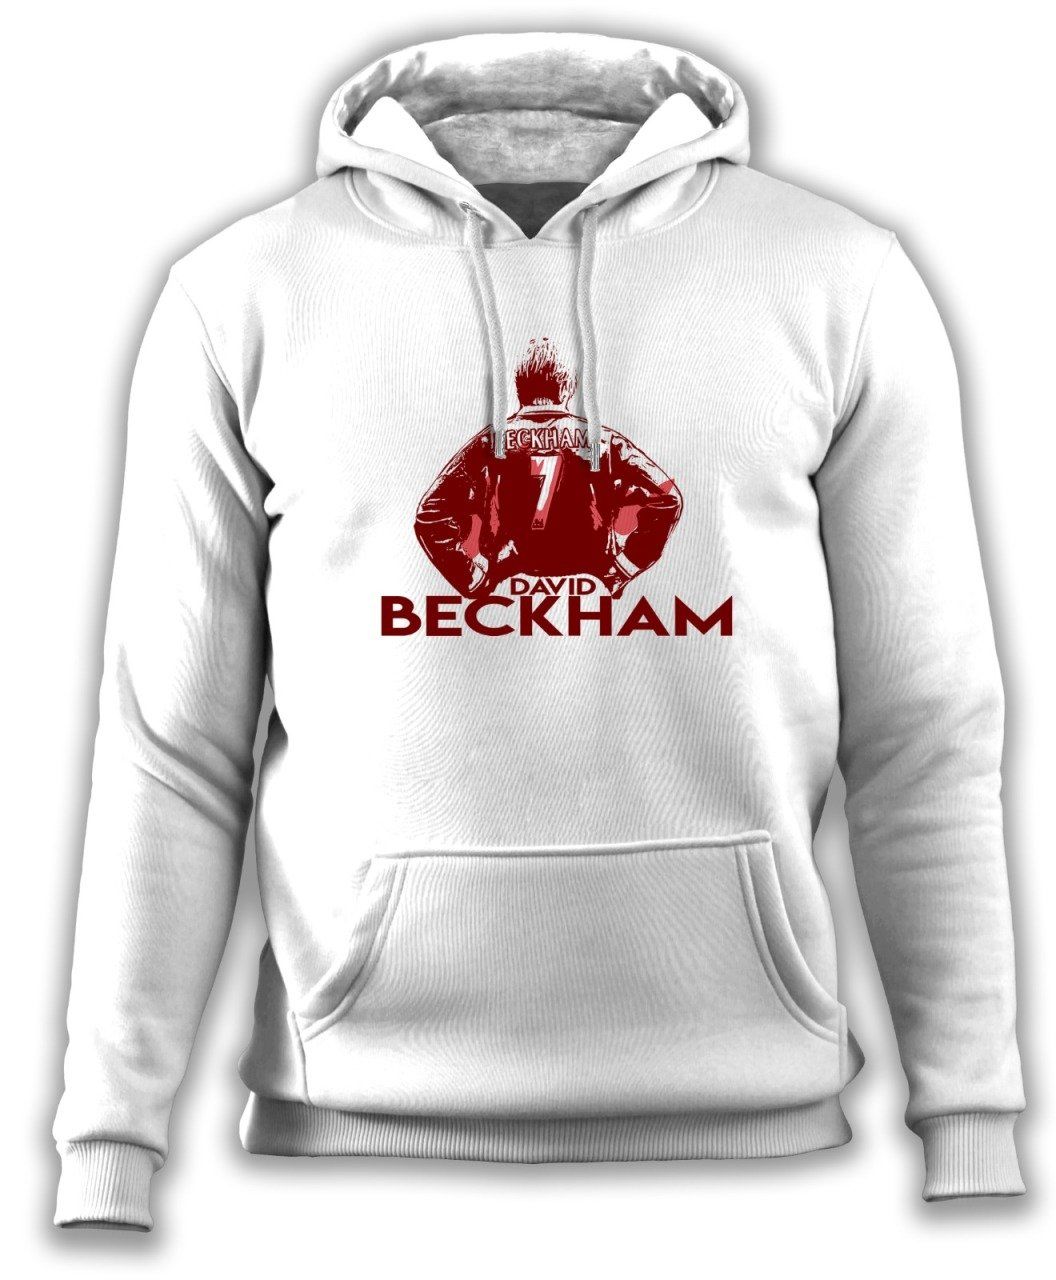 Beckham II Sweatshirt